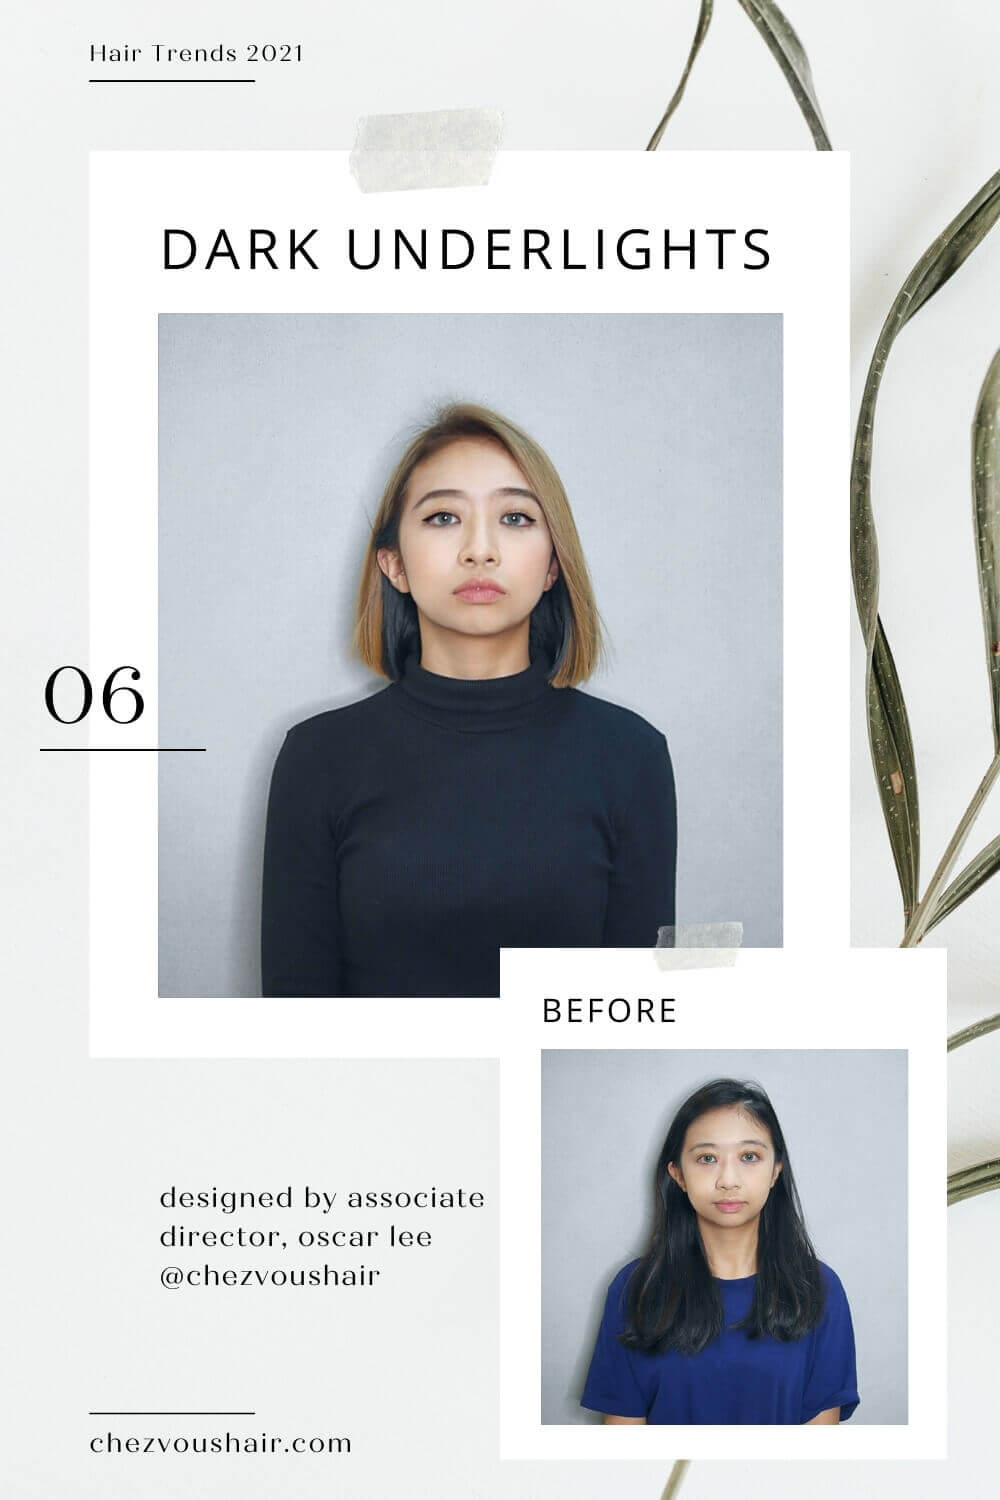 Hair Trends 2021: Dark Underlights